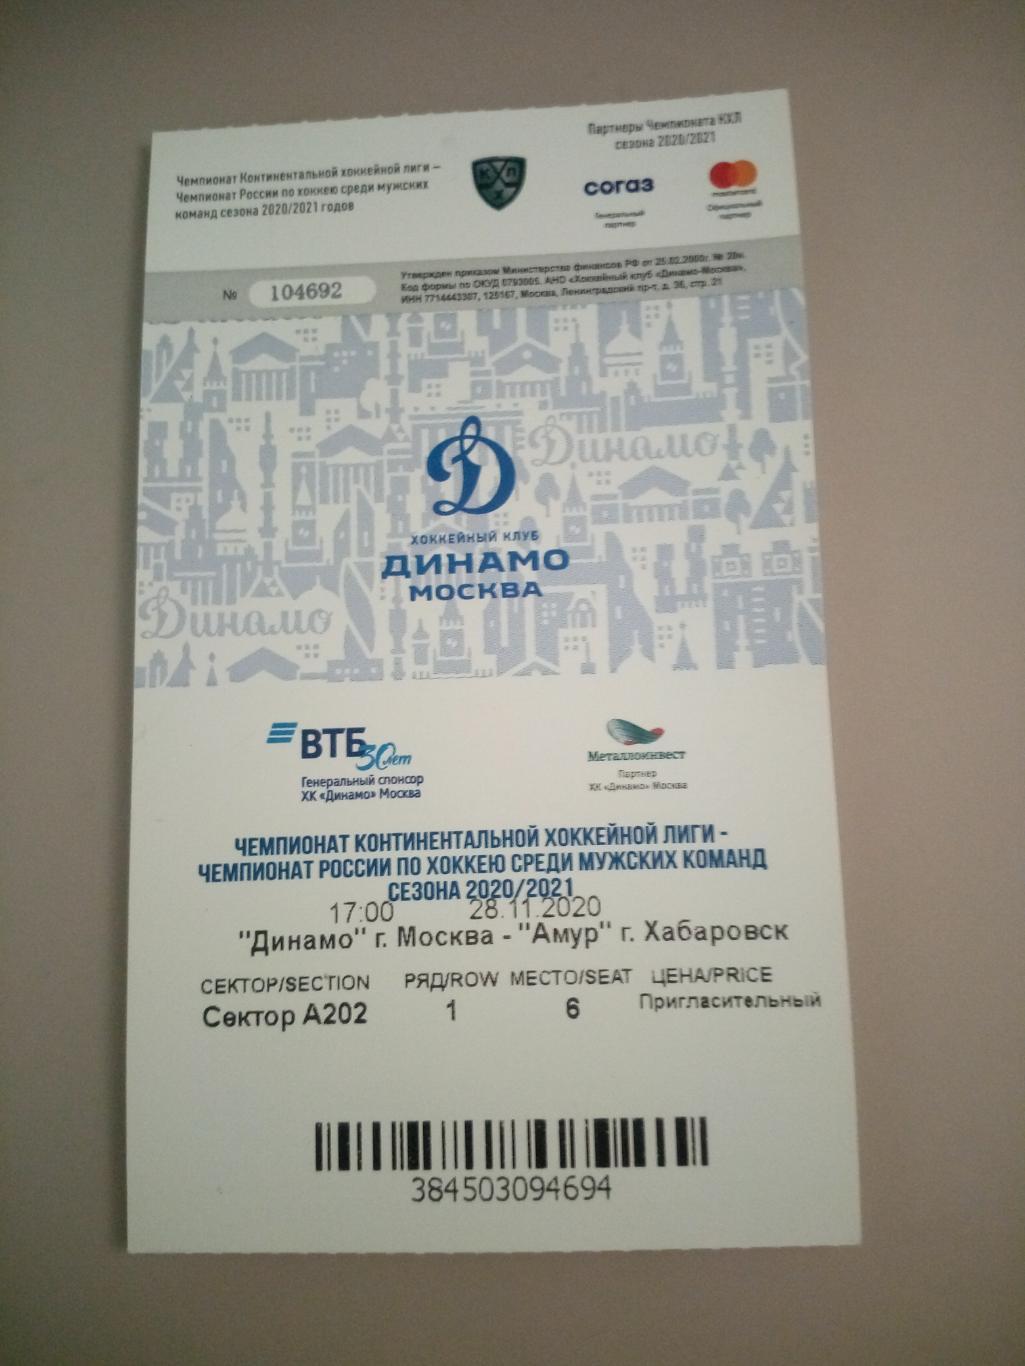 Динамо Москва - Амур Хабаровск 28.11.2020 билет